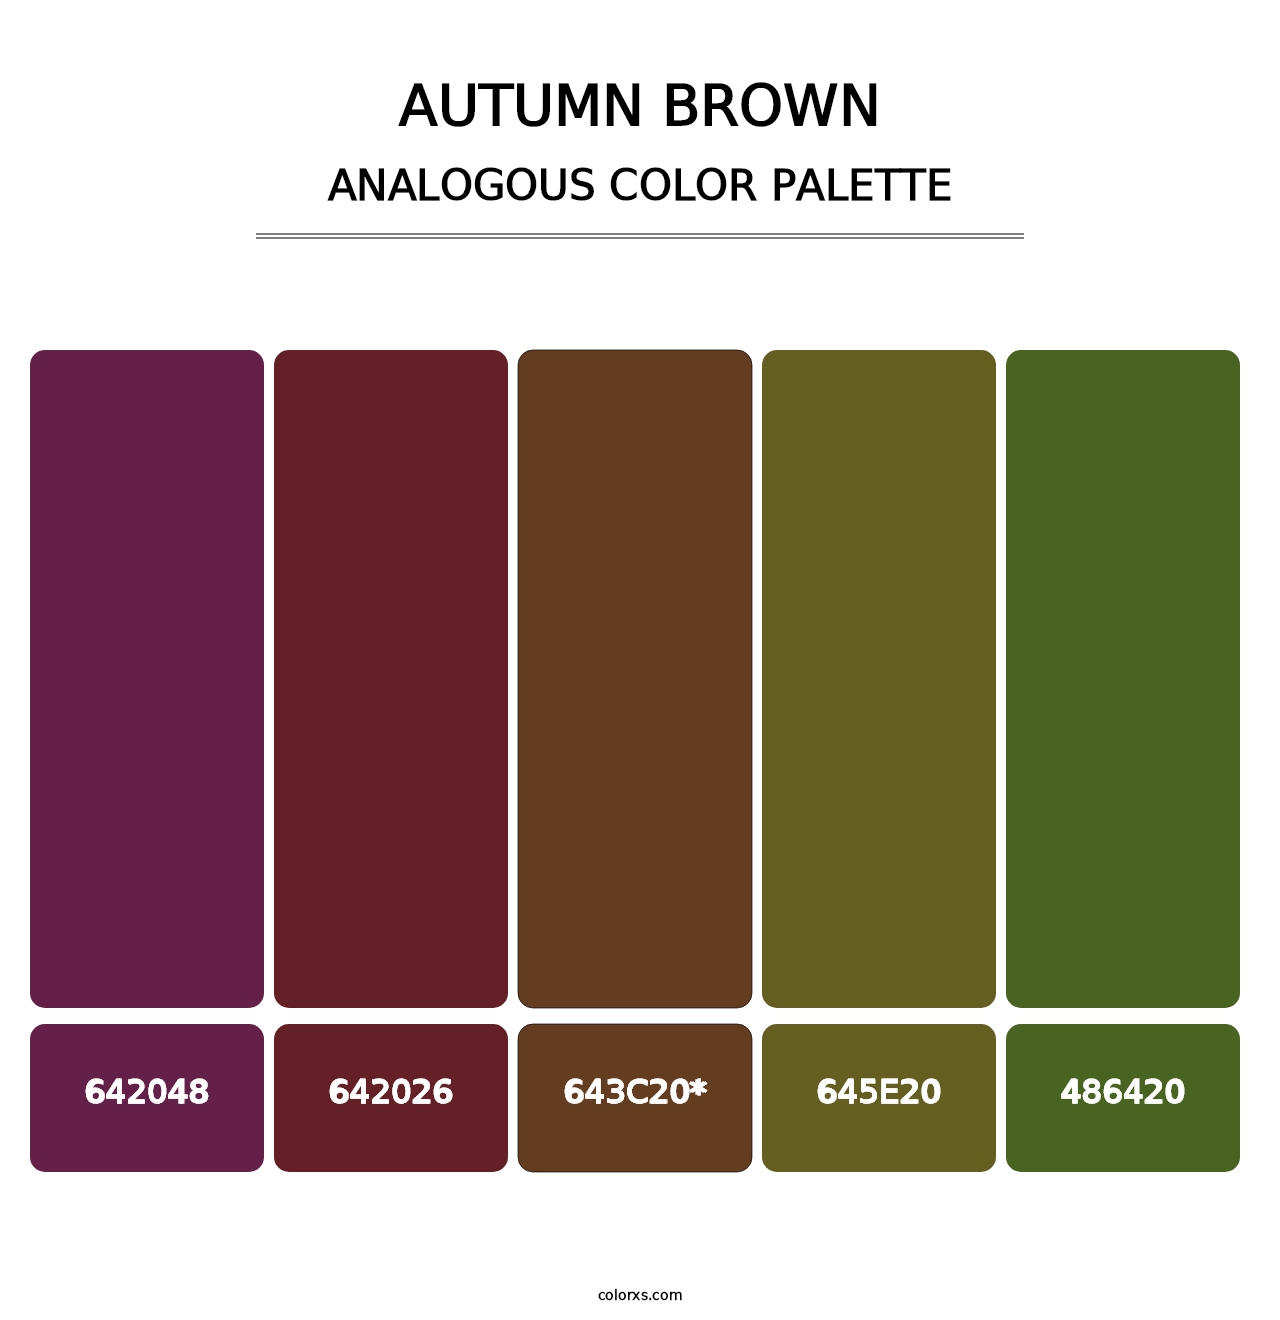 Autumn Brown - Analogous Color Palette